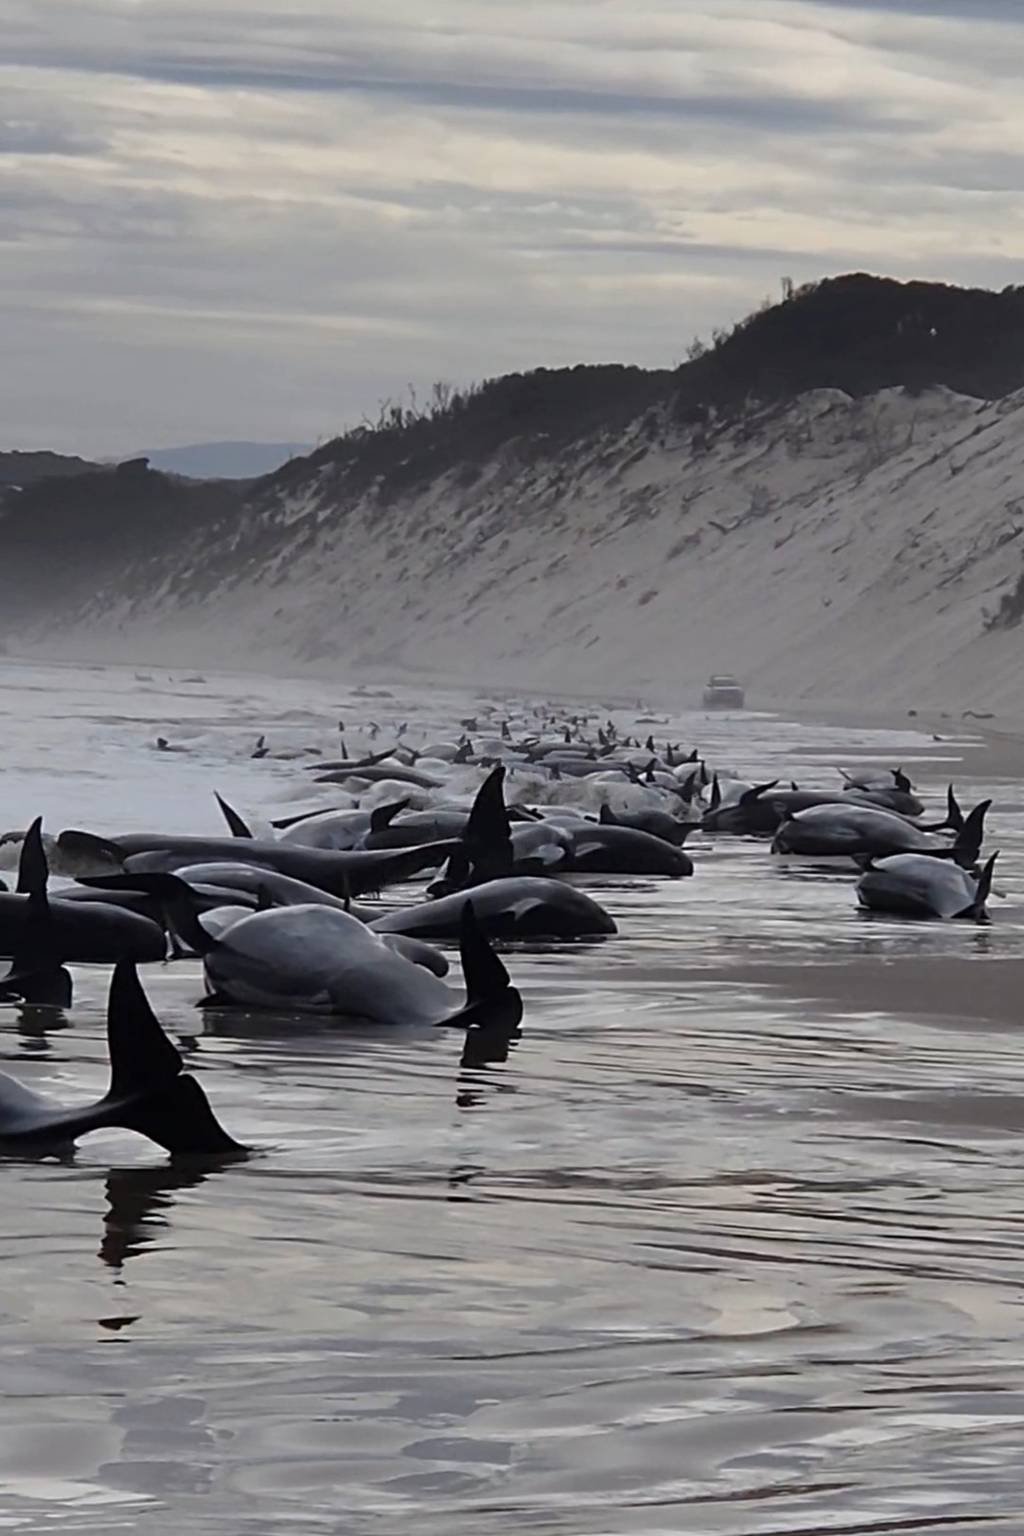 Baleias-piloto encalham na Tasmânia: como isso aconteceu?